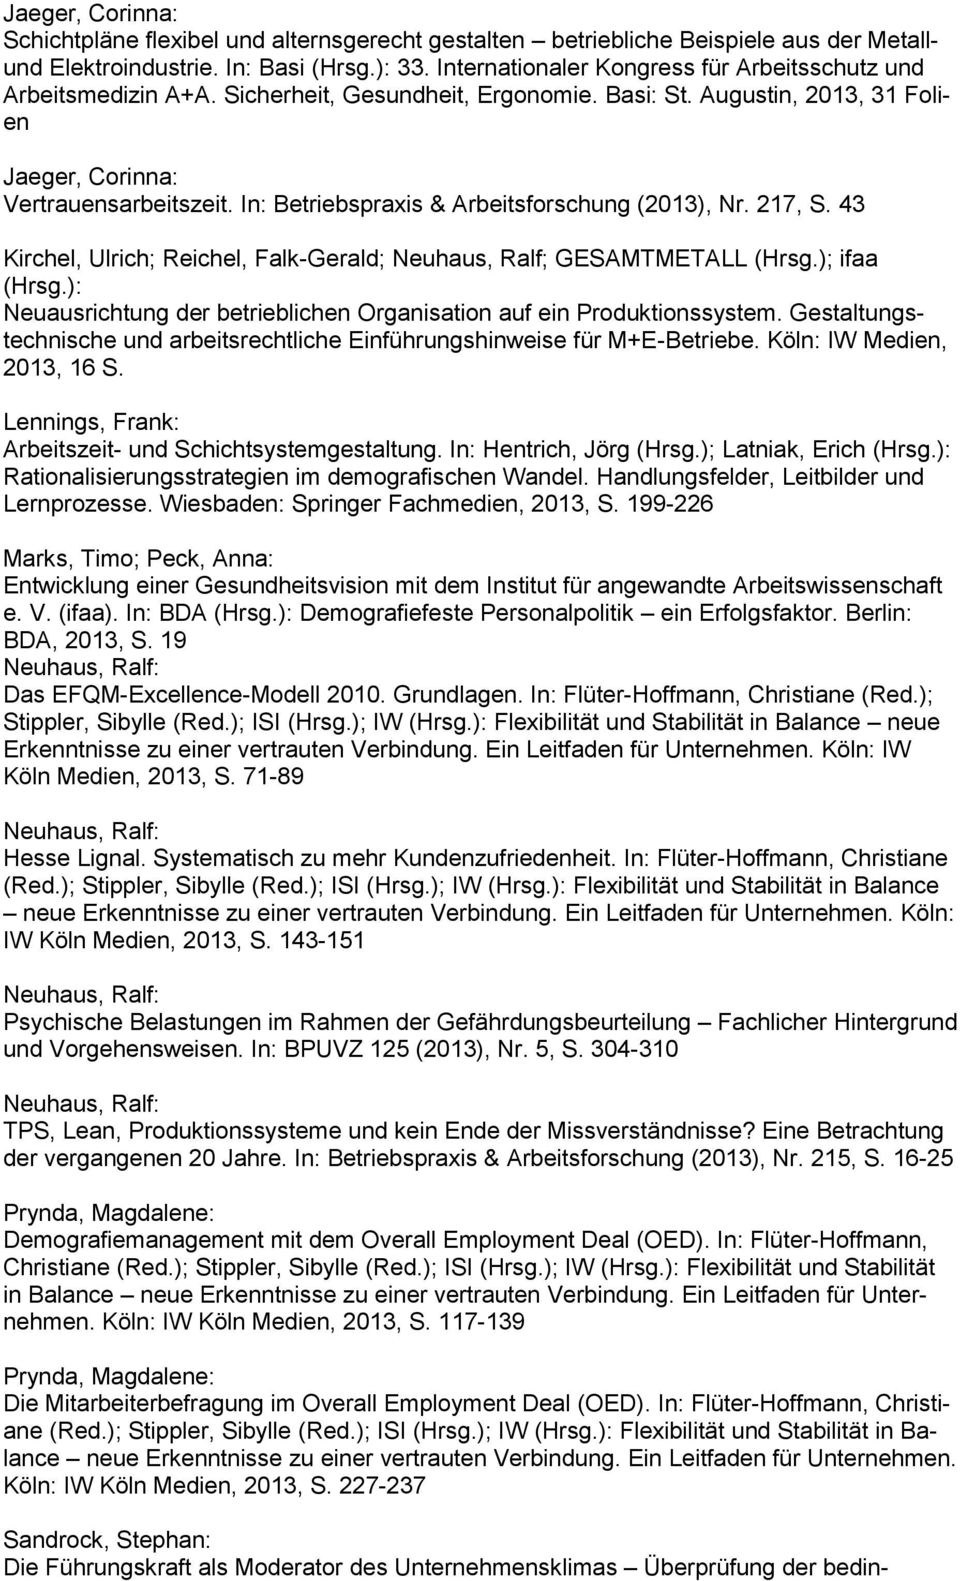 In: Betriebspraxis & Arbeitsforschung (2013), Nr. 217, S. 43 Kirchel, Ulrich; Reichel, Falk-Gerald; Neuhaus, Ralf; GESAMTMETALL (Hrsg.); ifaa (Hrsg.